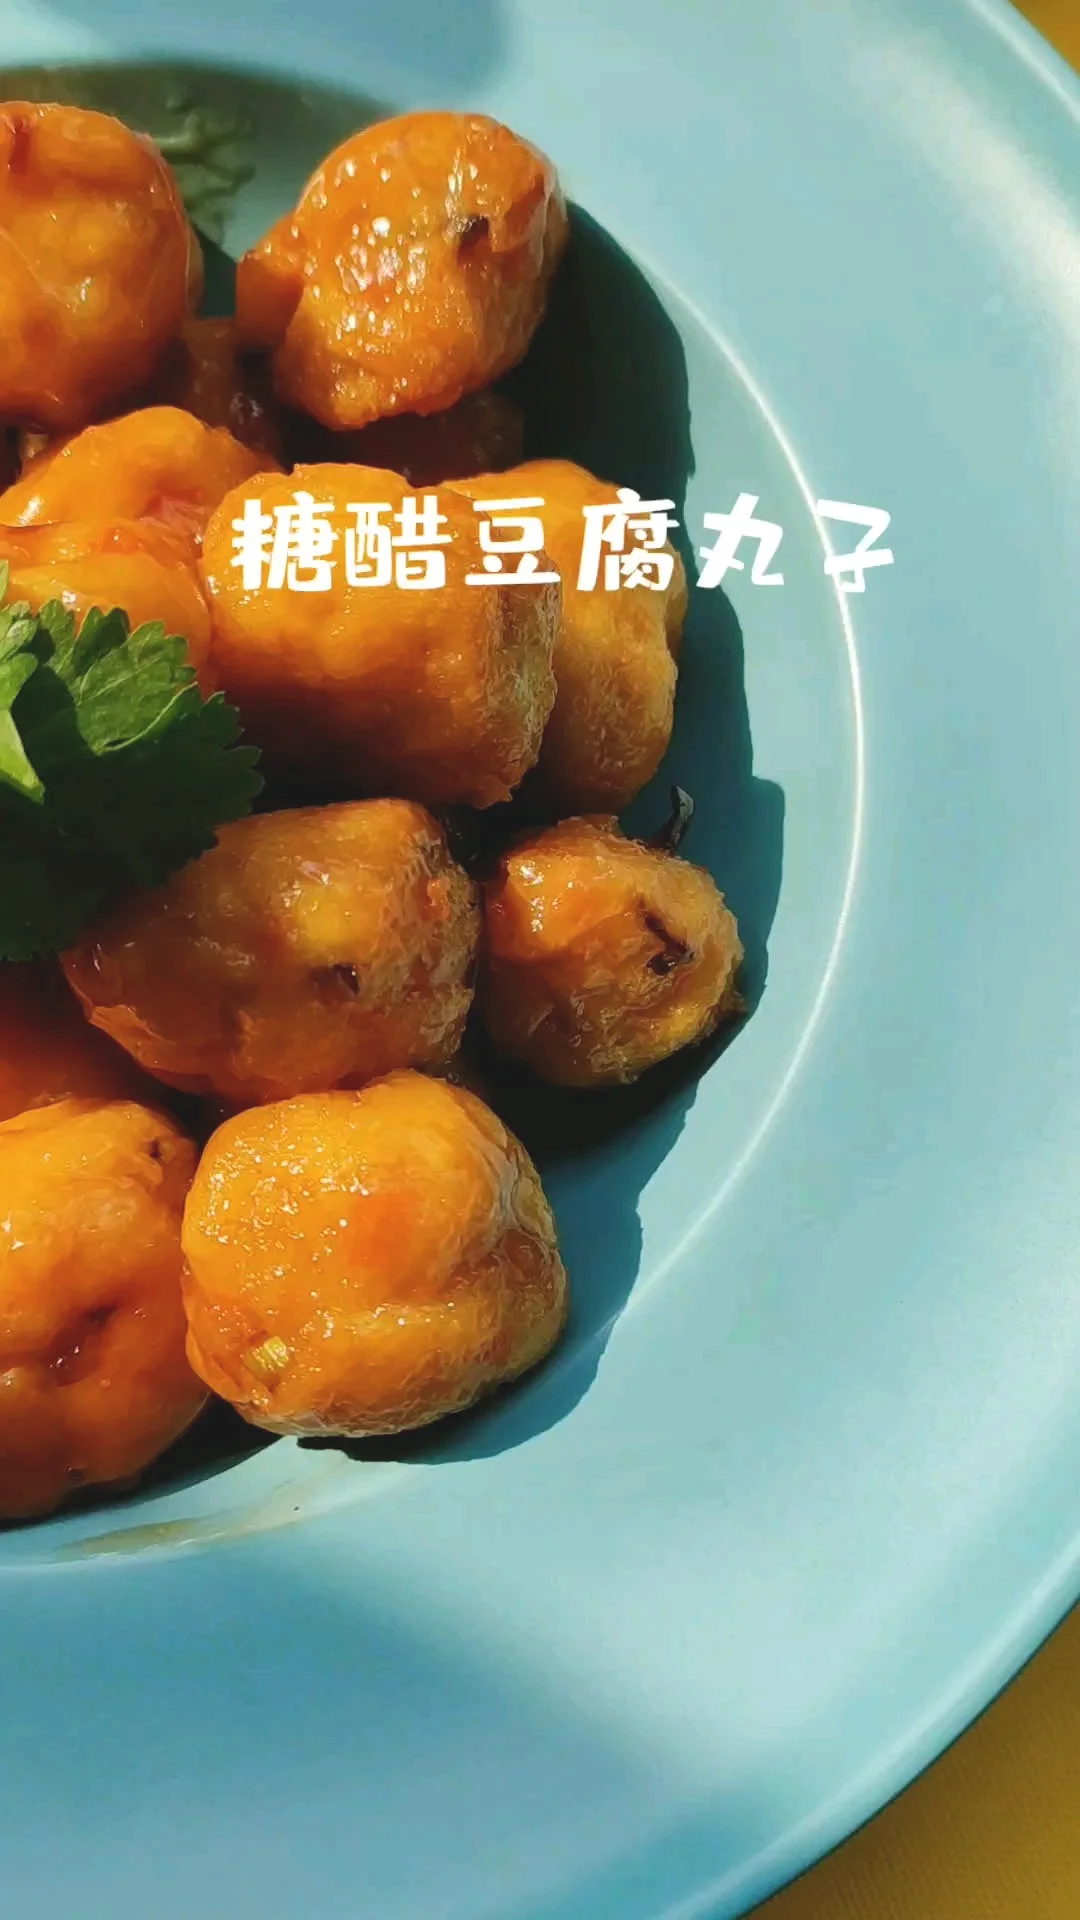 糖醋豆腐丸子的做法-酸甜味炸菜谱